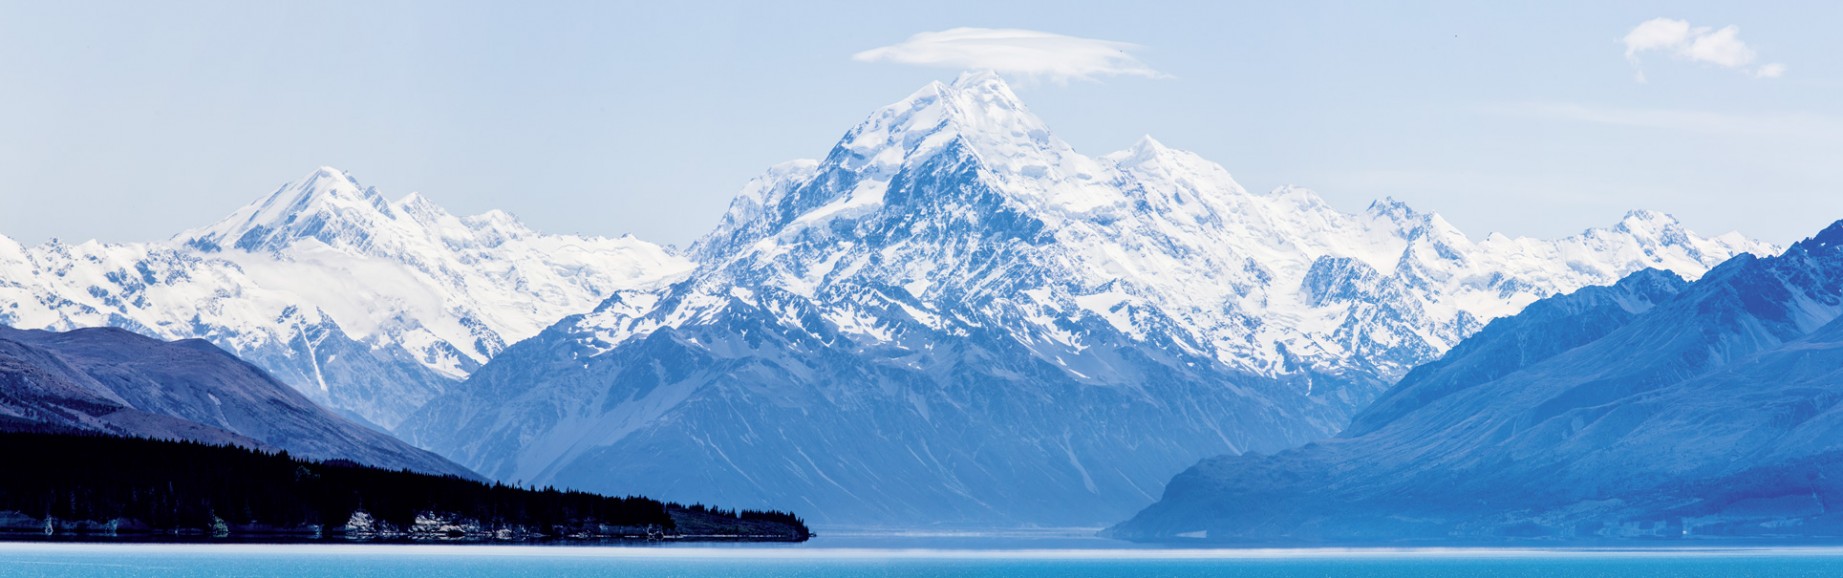 Der höchste Neuseeländer: Mount Cook über dem Lake Pukaki